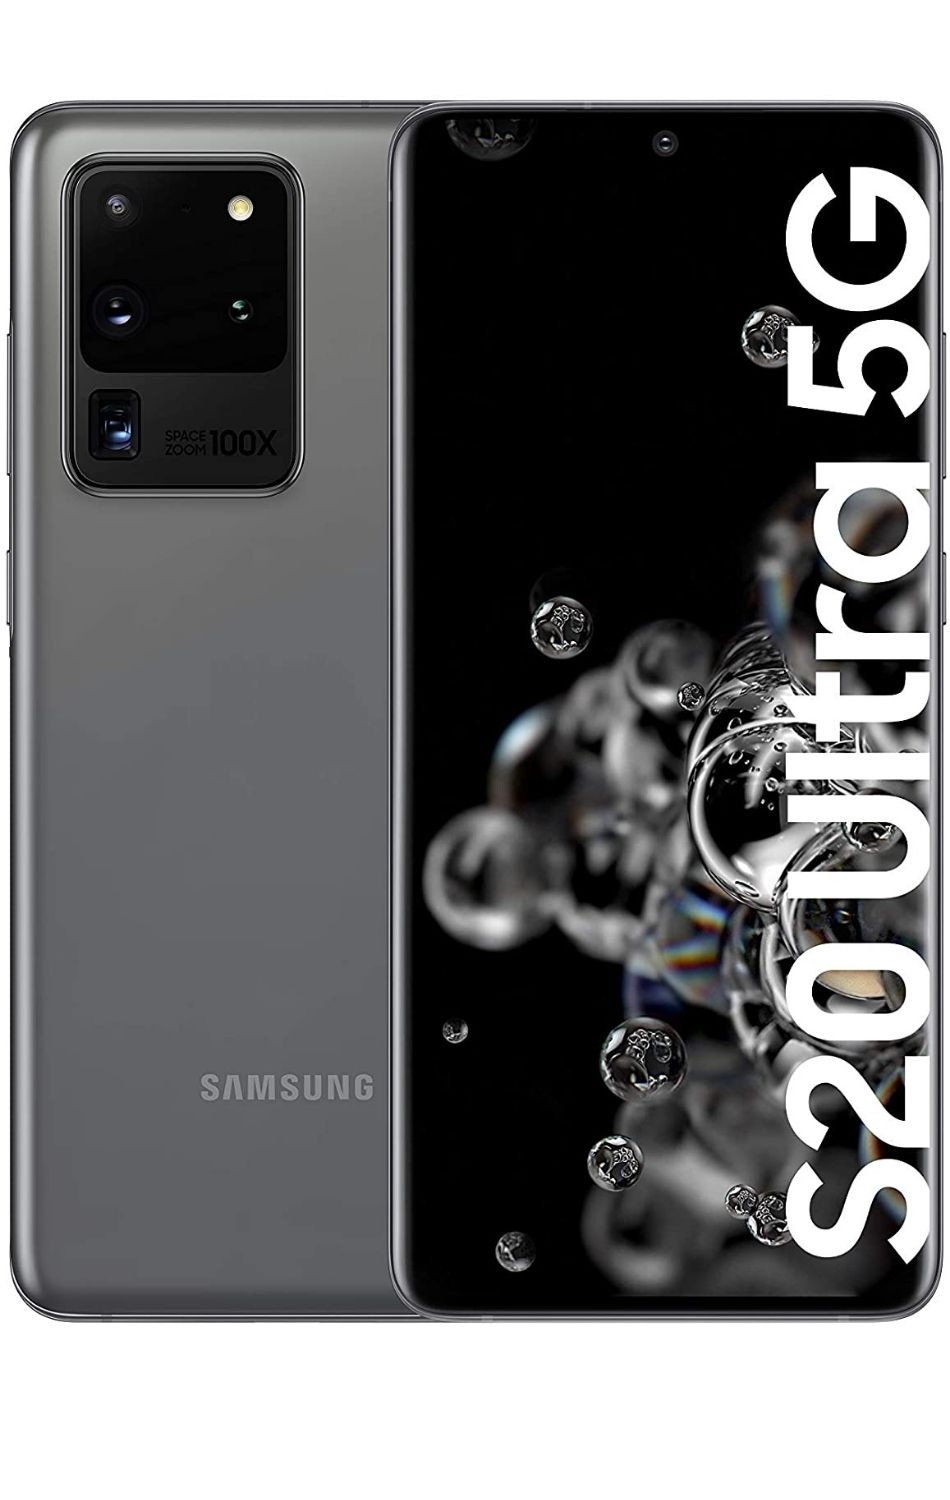 Samsung Galaxy S20 ultra